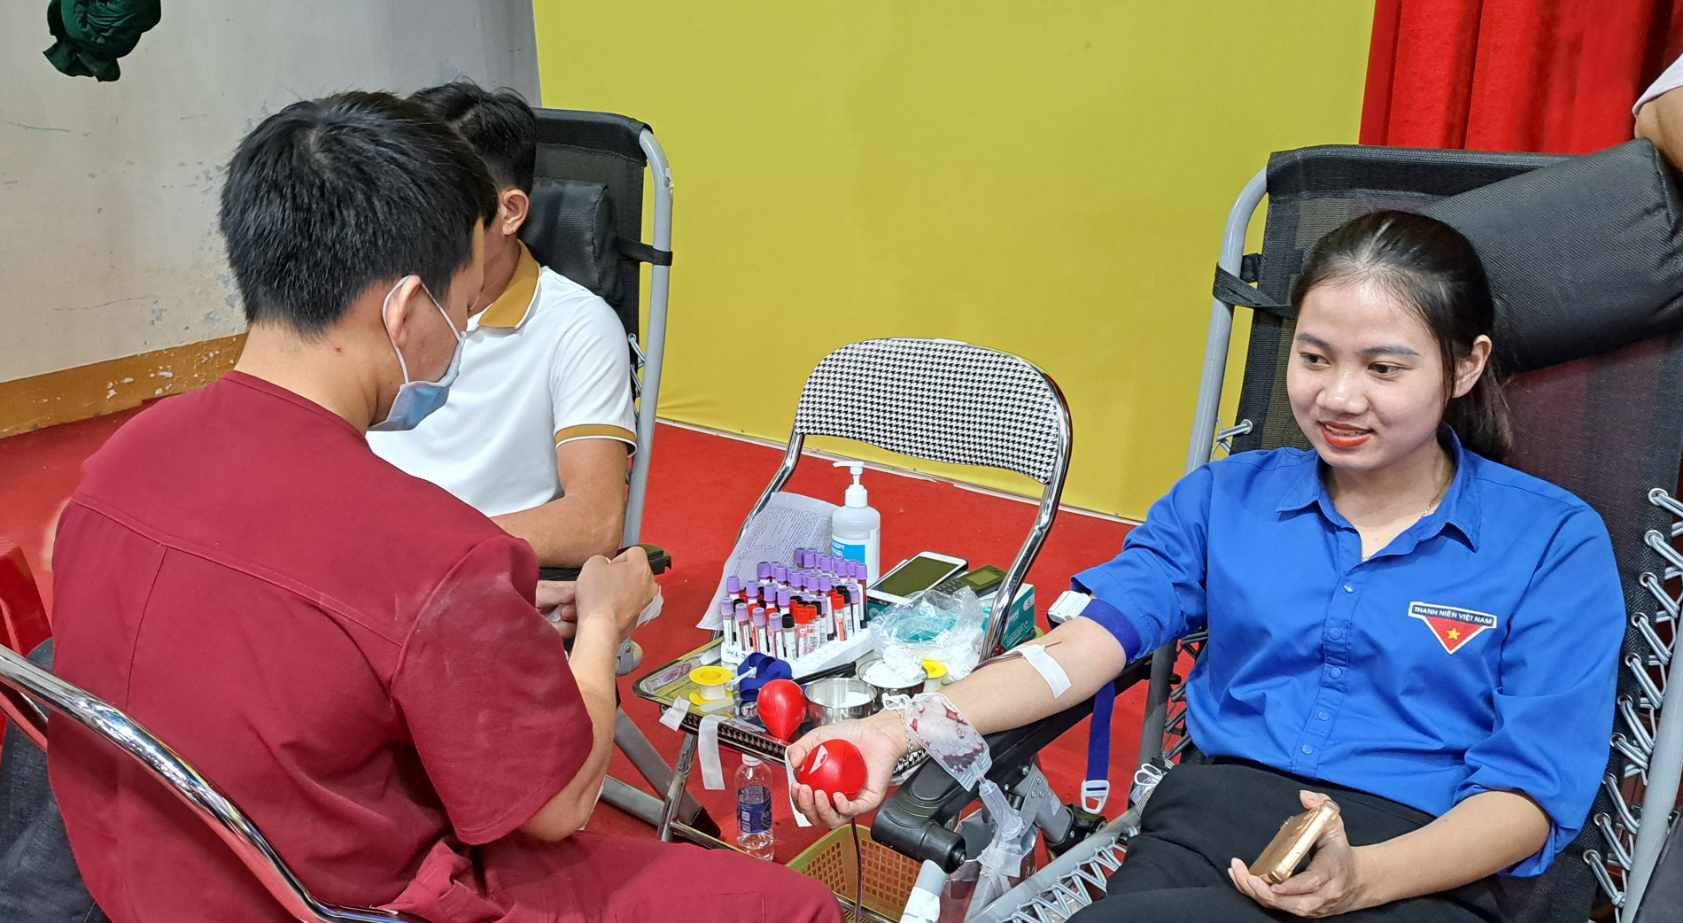 Đoàn viên, thanh niên huyện Lệ Thủy tham gia ngày hội hiến máu tình nguyện năm 2023.